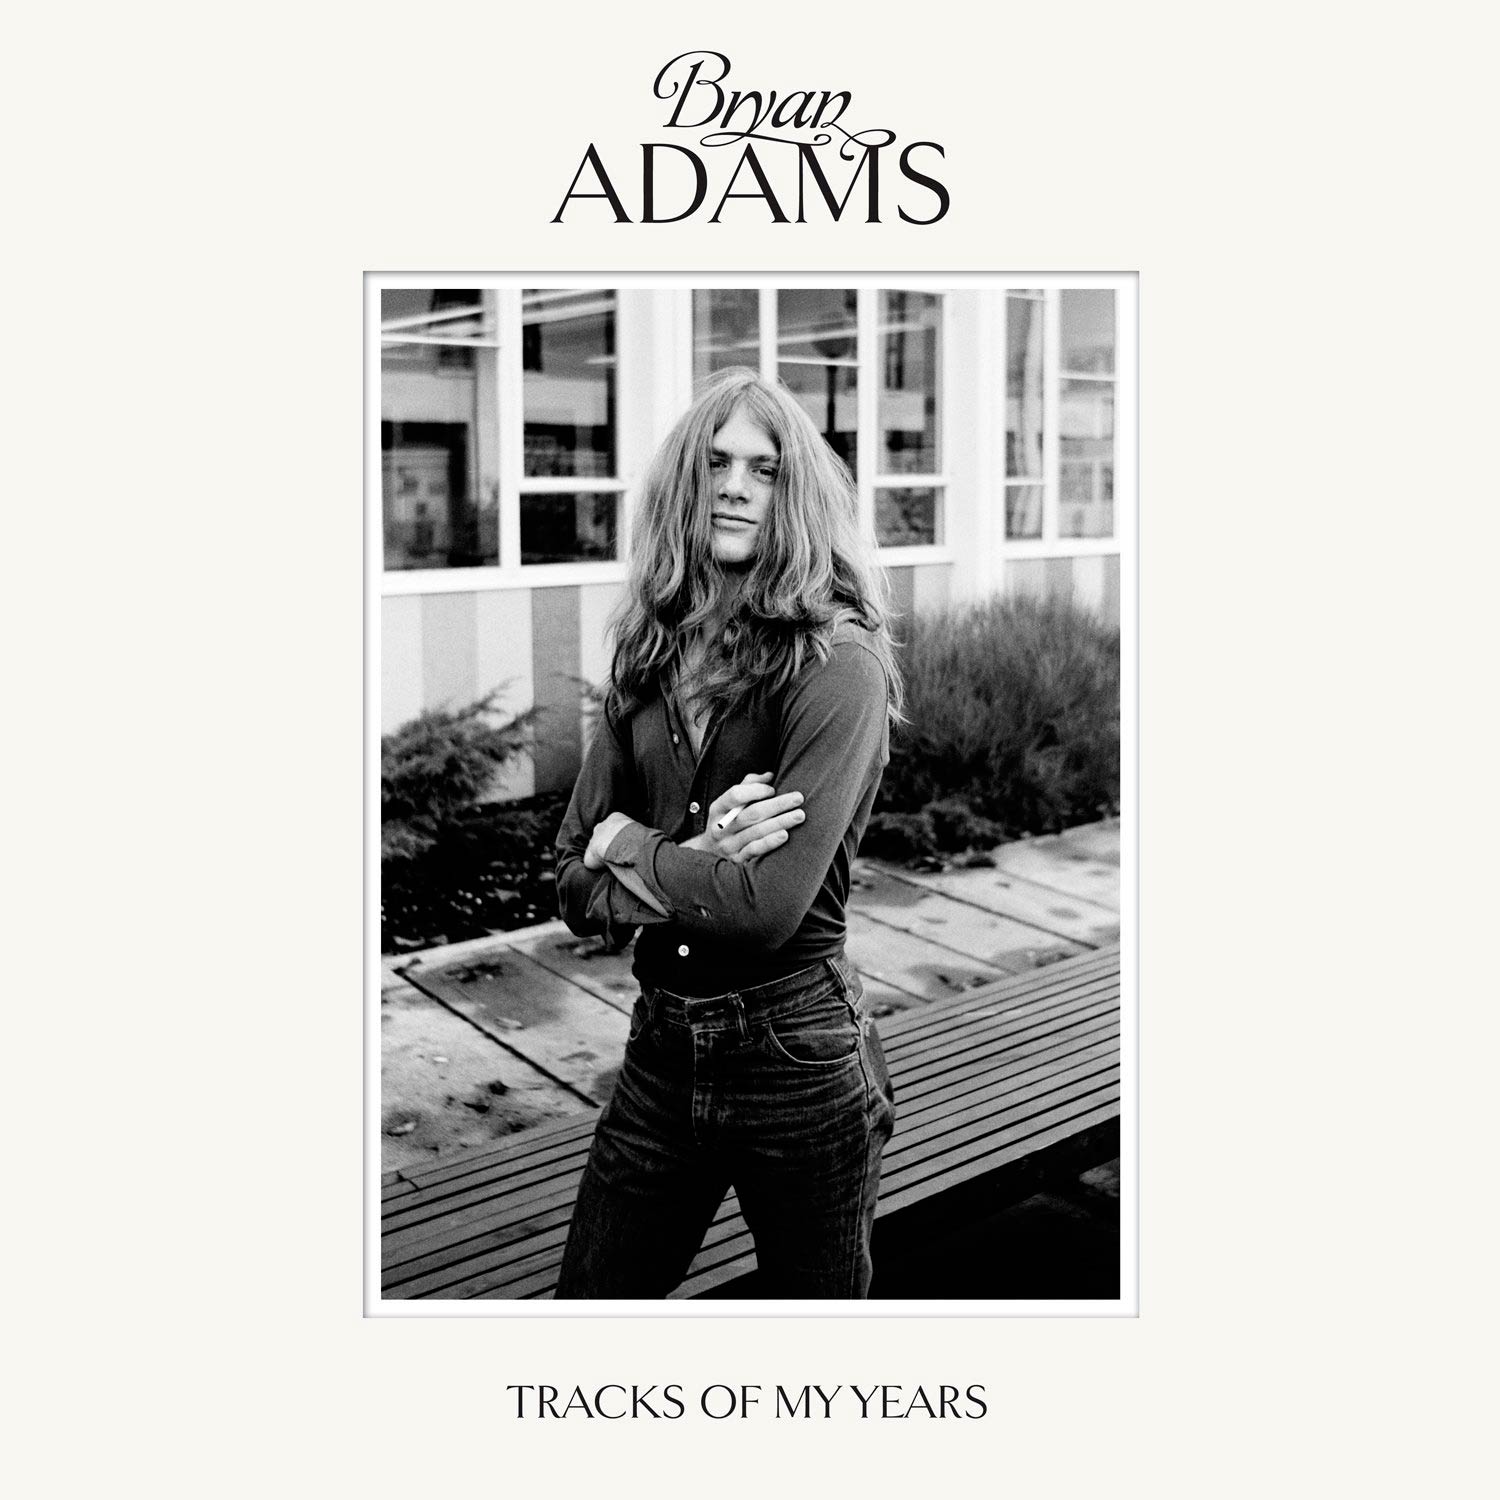 Bryan Adams: Tracks of my years, la portada del disco